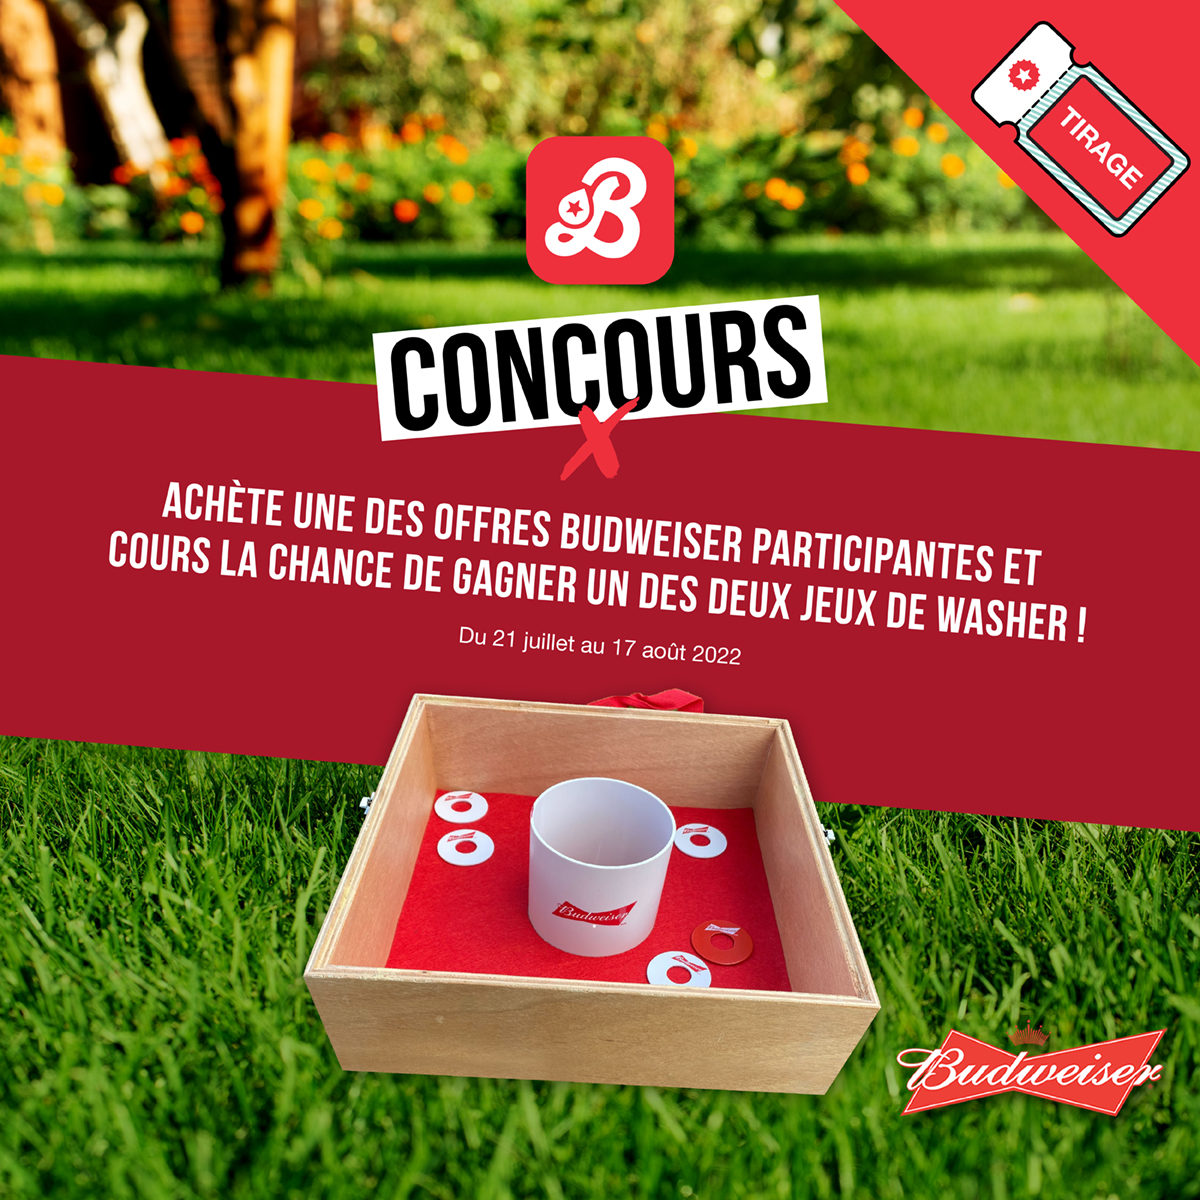 Concours CONCOURS - L'ÉTÉ, C'EST FAIT POUR JOUER!